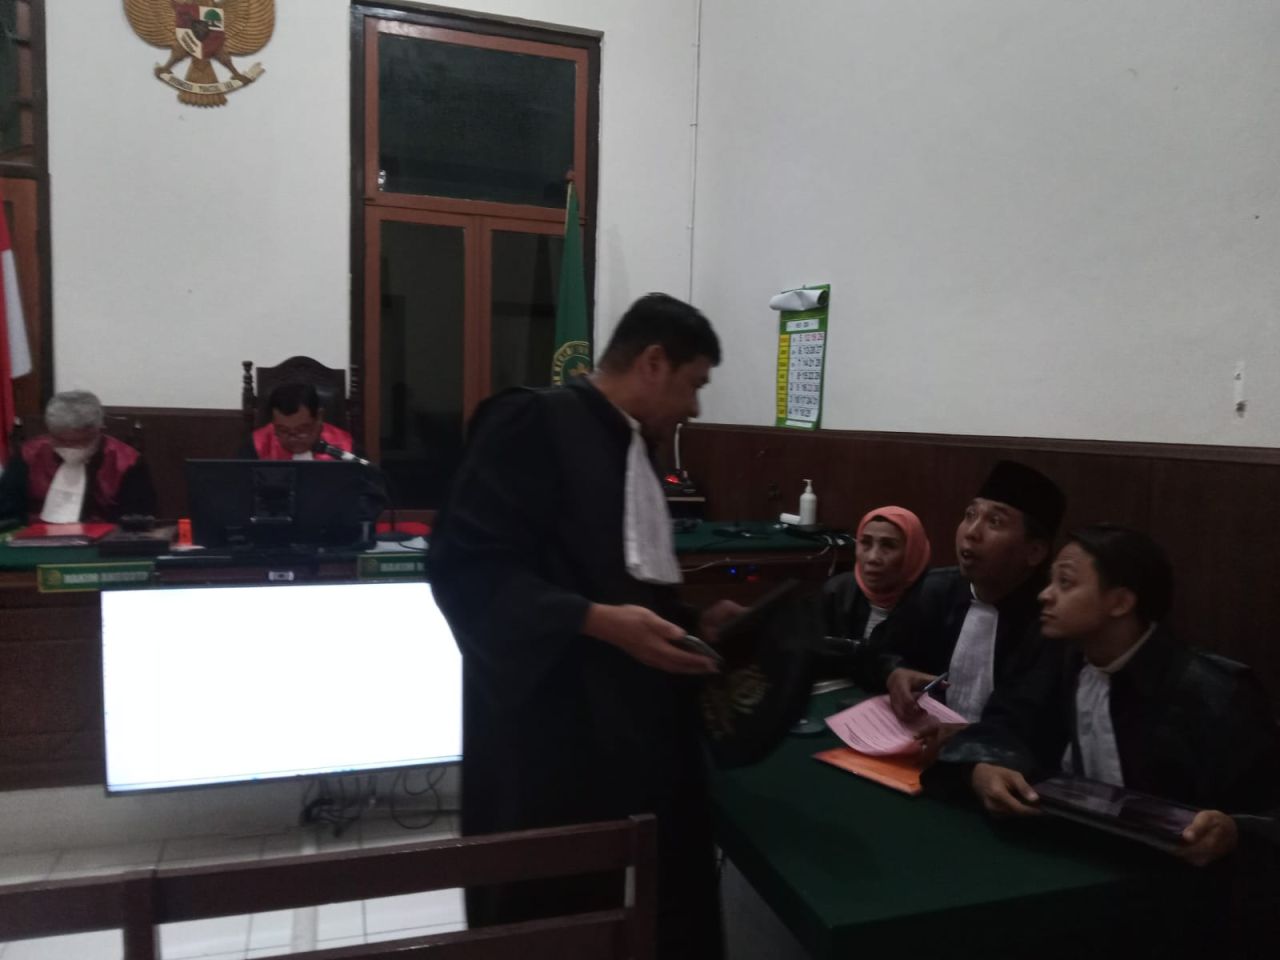 Aniayaa Pacarnya Erwin Dwi Kurnia Dituntut 1 Tahun Penjara